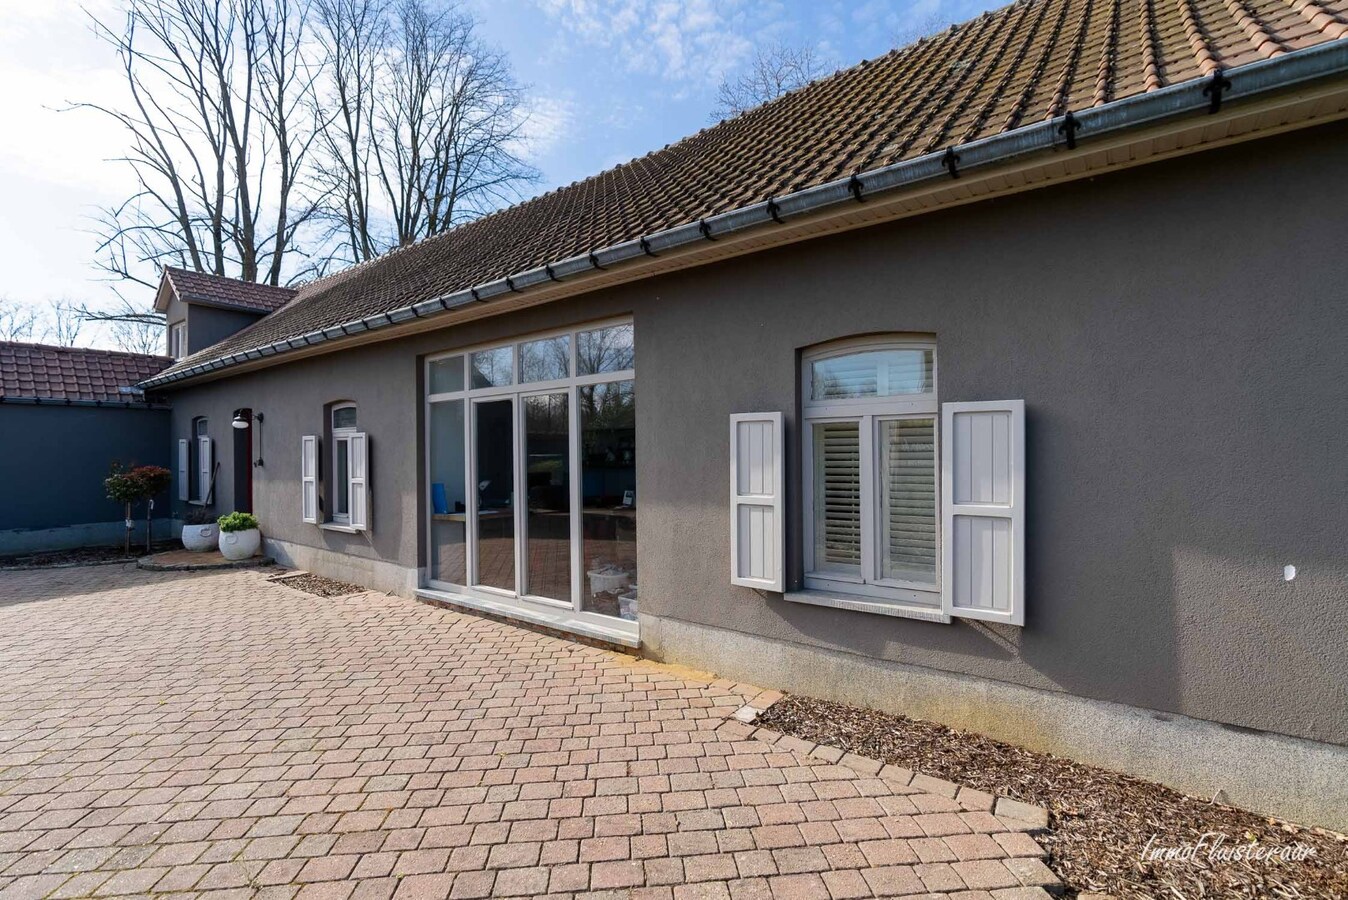 Property sold in Beringen